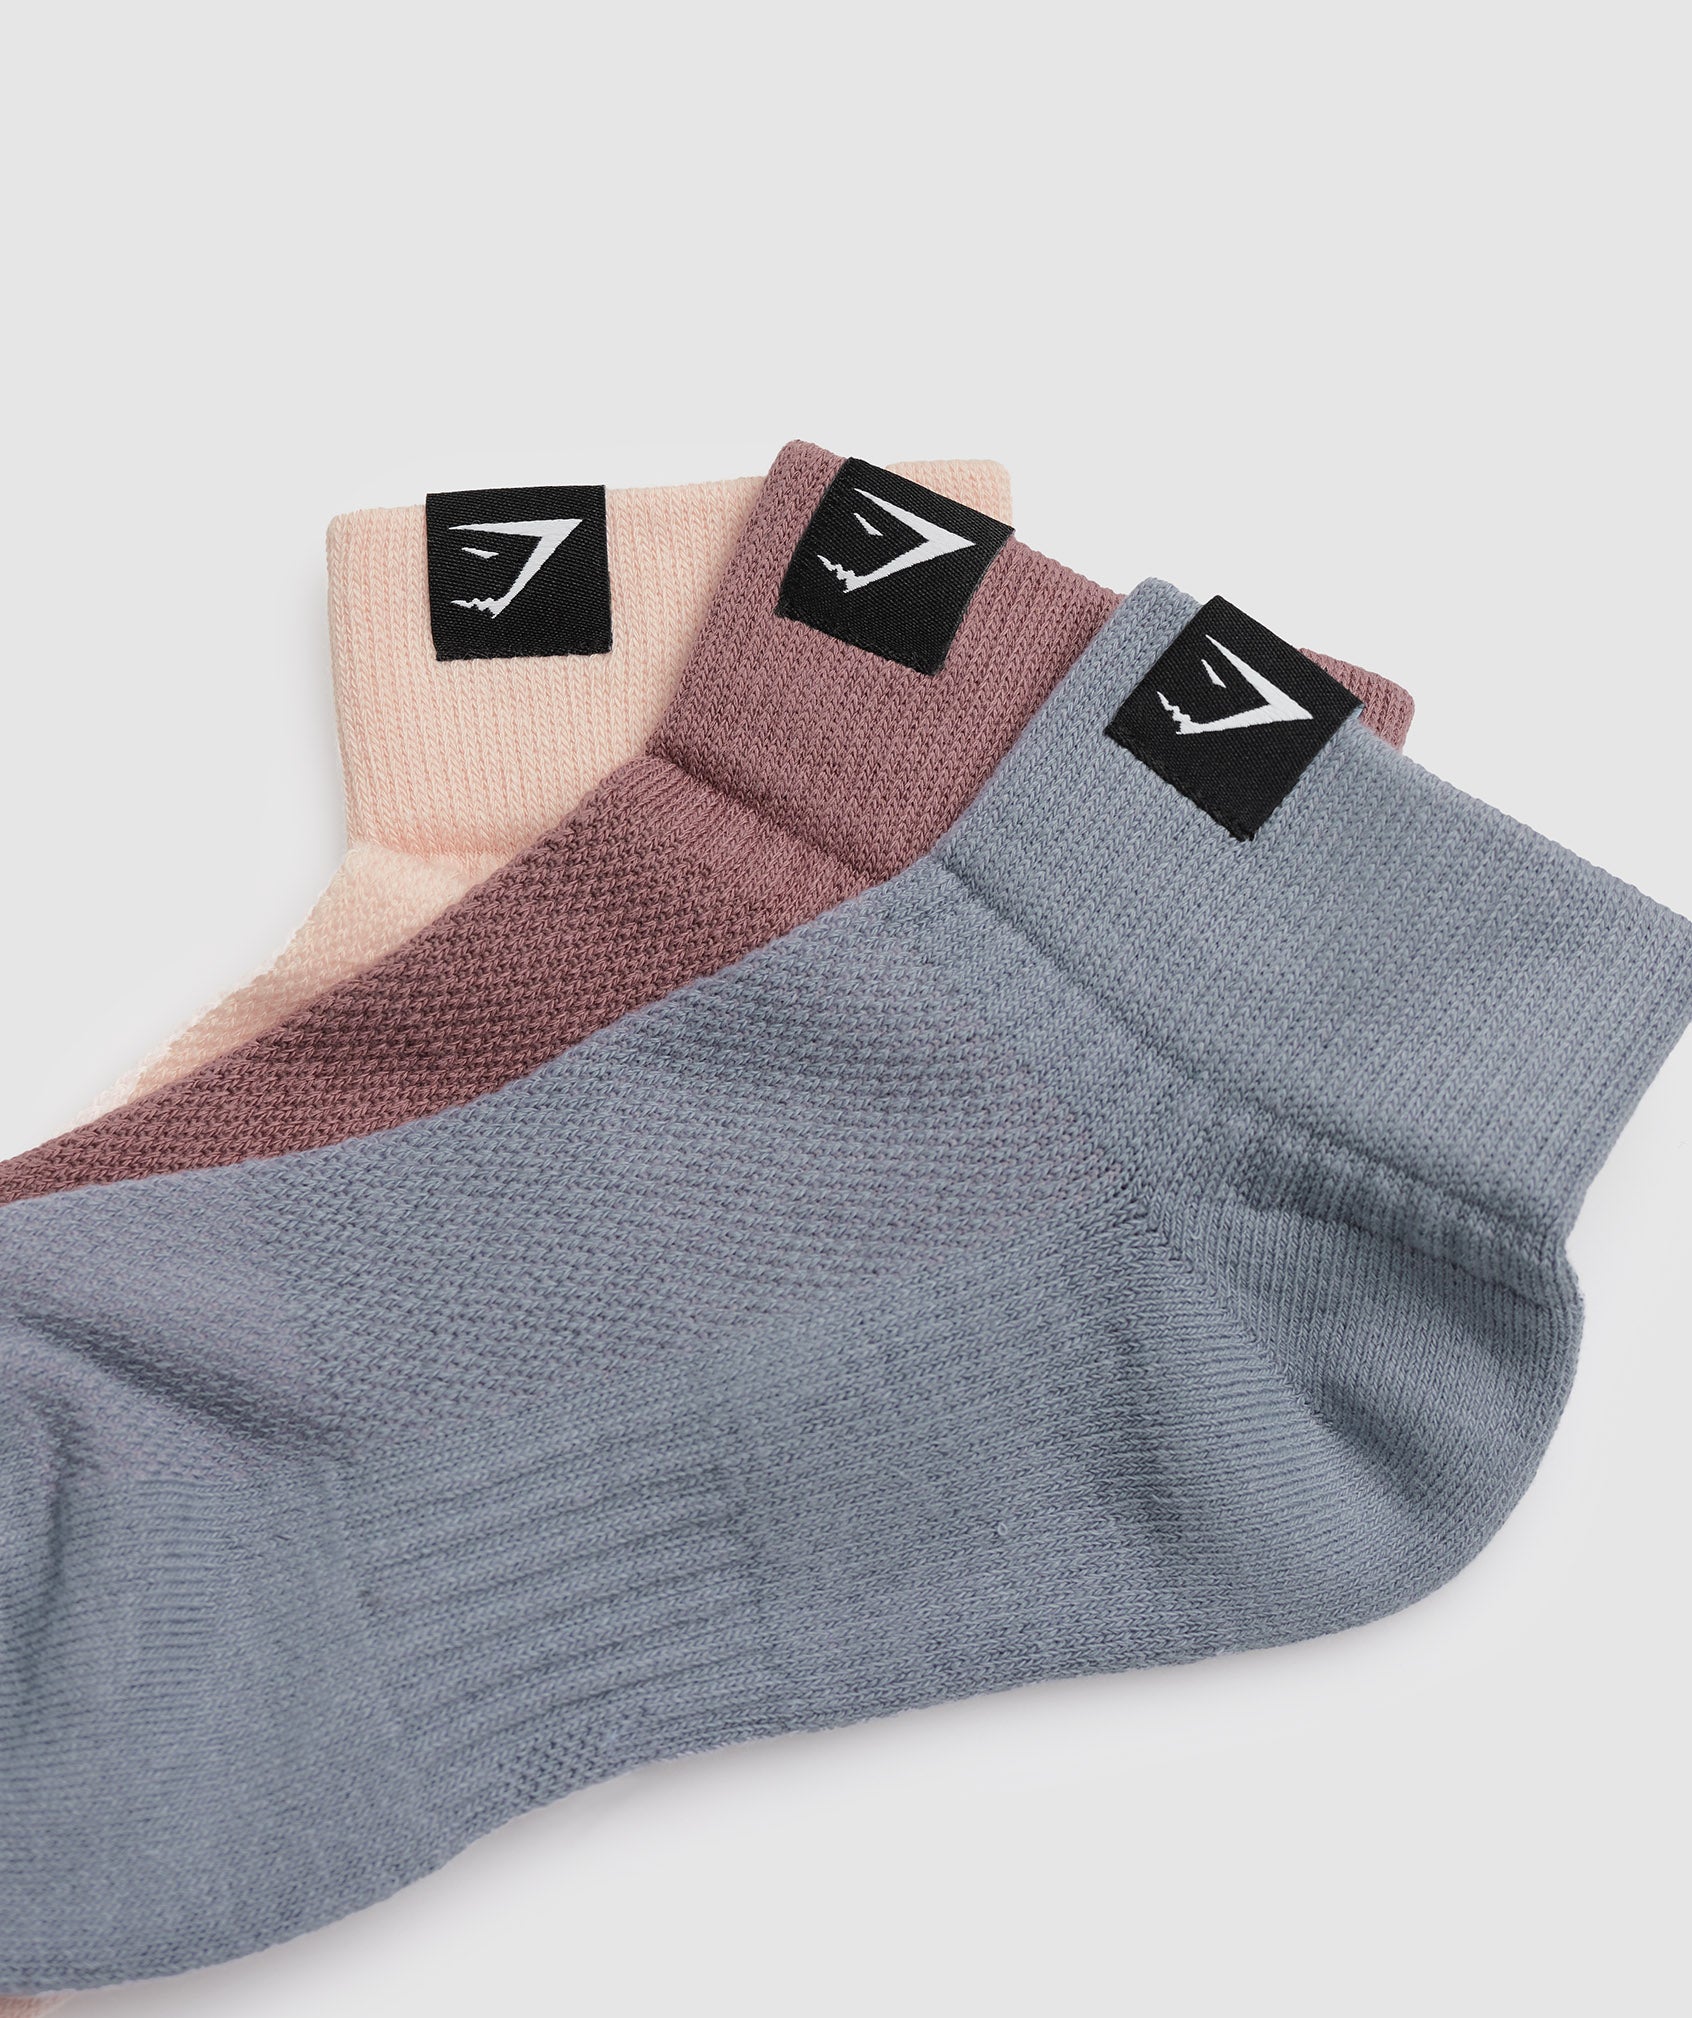 Woven Tab Quarter Socks 3pk in Misty Pink/Drift Grey/Maroon